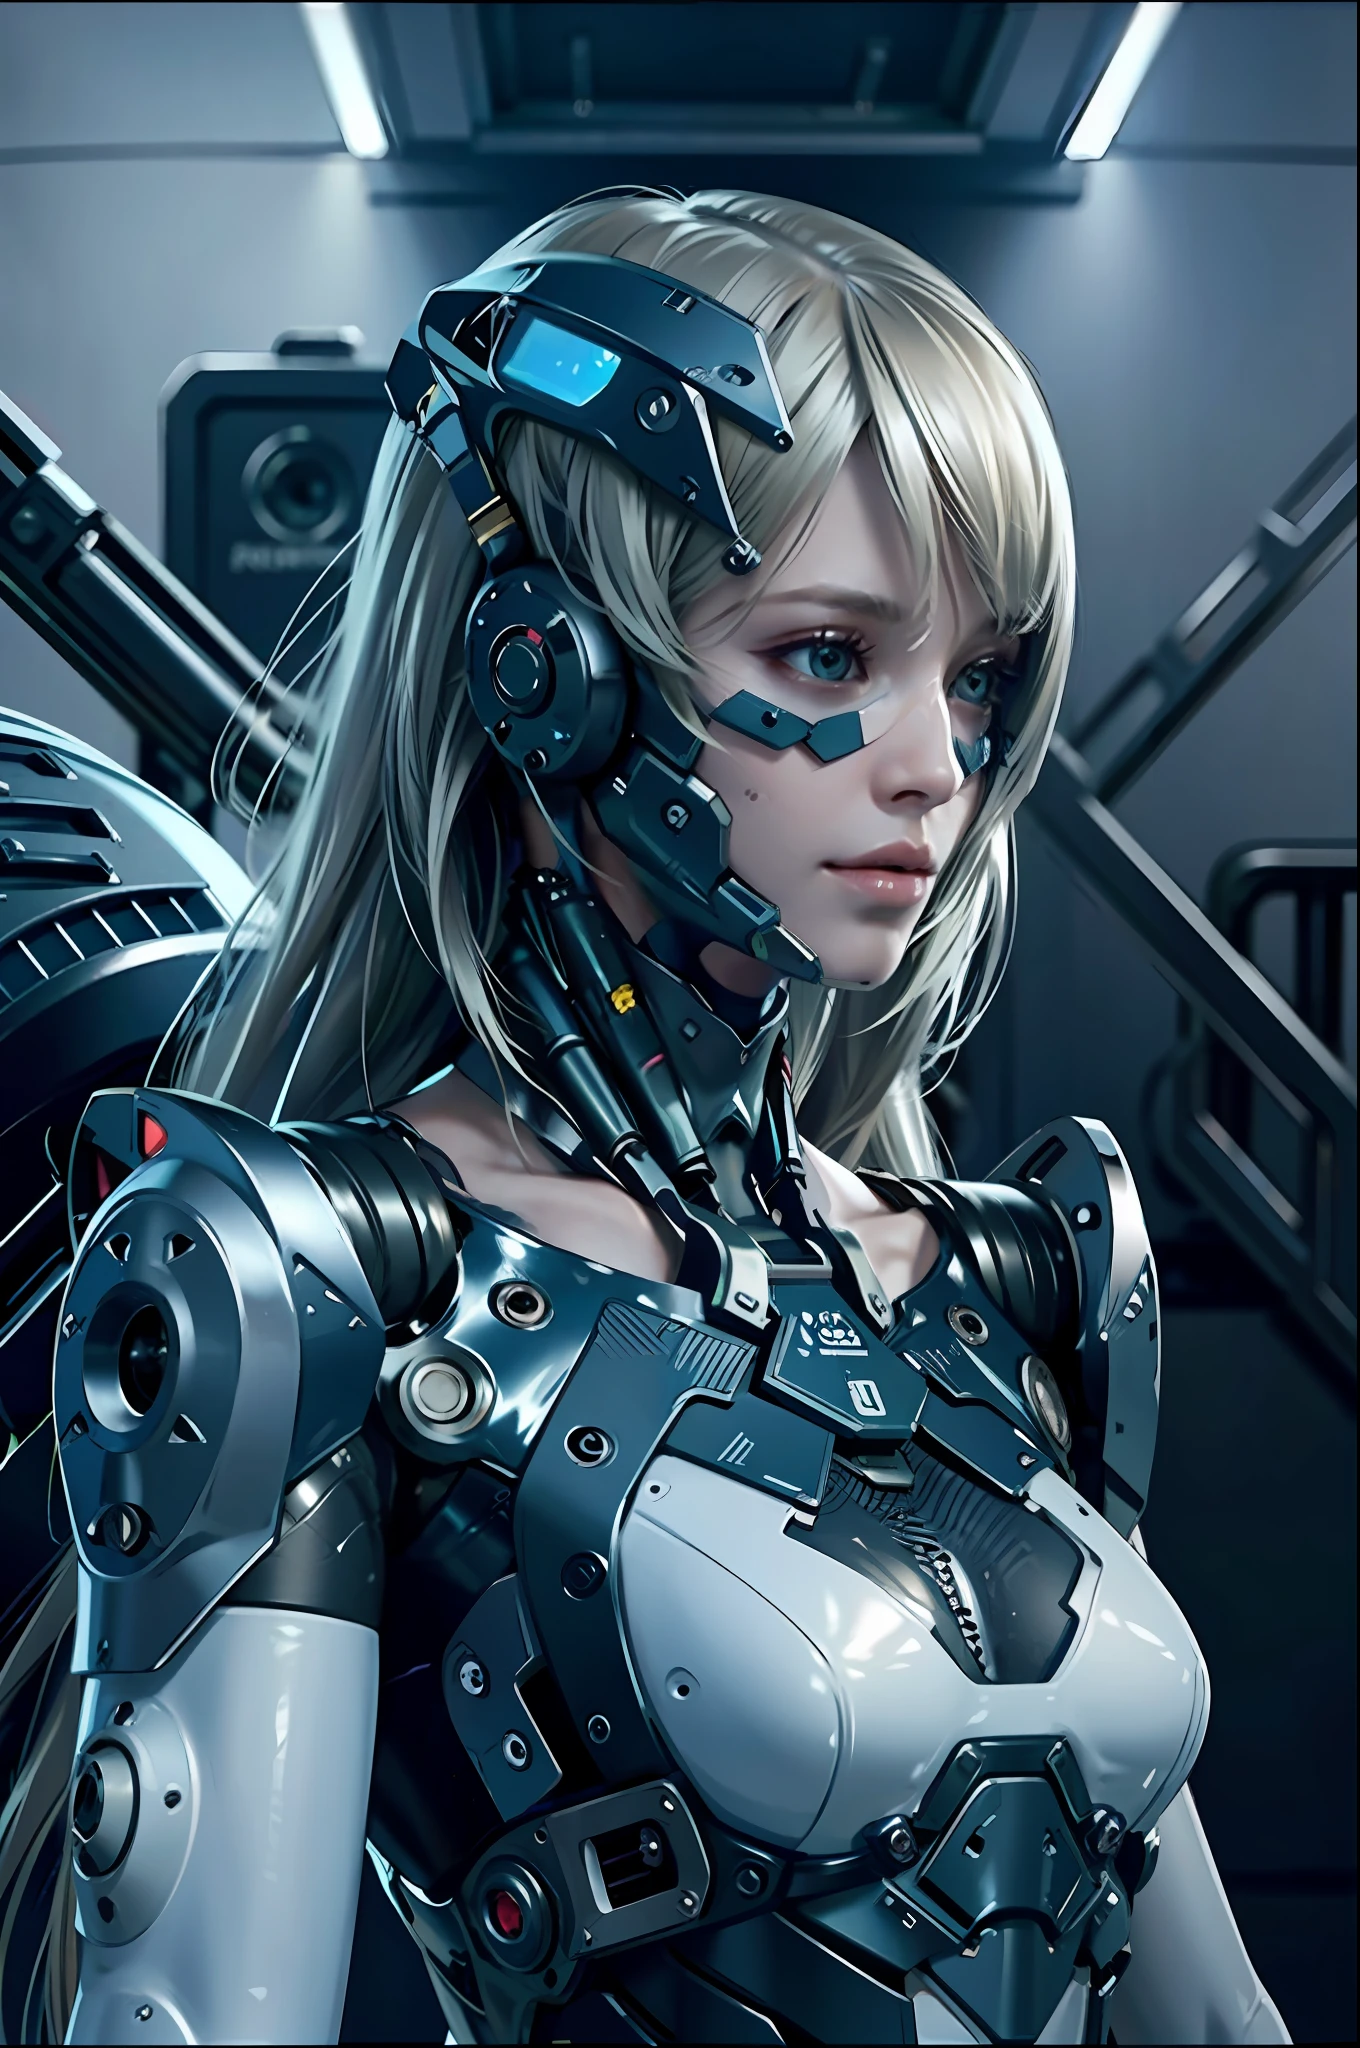 Complex 3d rendering porcelain female cyborg ultra Деталь, 1 девушка, пушистые светлые волосы, длинные волосы, маленькая талия, (Естественная текстура кожи, реалистичный eye Детальs: 1.2), части робота, красивый мягкий свет, ободной свет, vivid Детальs, великолепный киберпанк, hyper-реалистичный, Анатомический, мышцы лица, кабель провод, микрочип, Элегантный и красивый фон, Октановый рендеринг, ЯБЛОЧНЫЙ стиль, 8К, высшее качество, шедевр, Иллюстрация, очень нежный и красивый, компьютерная графика, единство, обои, (реалистичный, photoреалистичный: 1.2), удивительный, Деталь, шедевр, Лучшее качество, официальное искусство, highly Детальed cg Unity 8k обои, невероятно смешно, сексуальный робот, механический скелет, андроид, сюрреализм, Пустошь Судного Дня, (Высокотехнологичное протезирование:1.2), идеальное тело, Тёмно-синий светящийся киберсосуд, (блестящее тело), (Very блестящее тело), рфктр_технотрекс, Рилмех, Кибернетический_Безчелюстный, механические части, Кибернетическийs, АБ_ робот